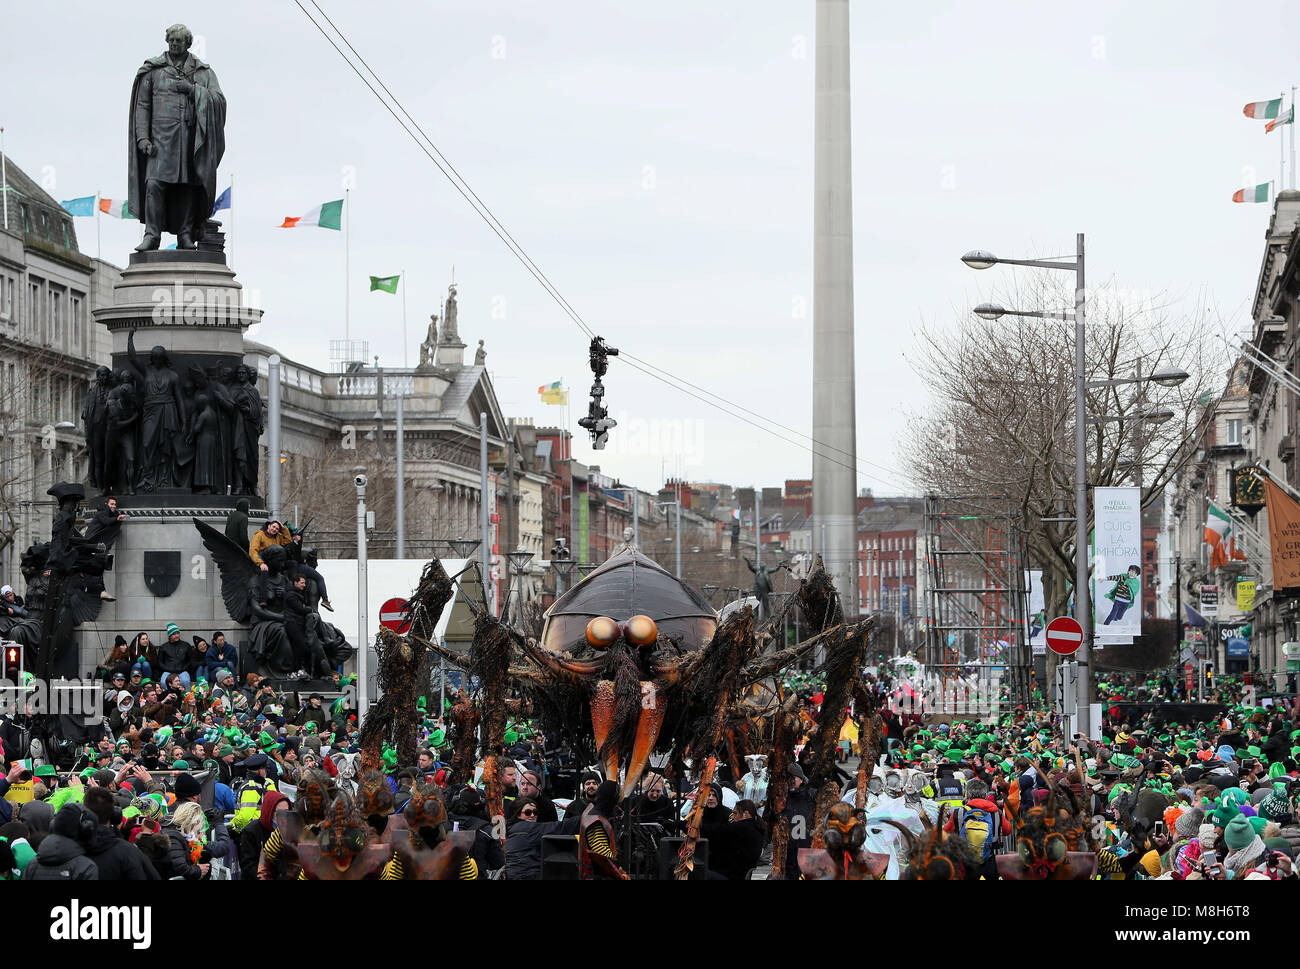 Vue de la St Patrick's Day Parade faisant son chemin vers le bas O'Connell street à Dublin. Photo date : Samedi 17 Mars, 2018. Crédit photo doit se lire : Brian Lawless/PA Wire Banque D'Images